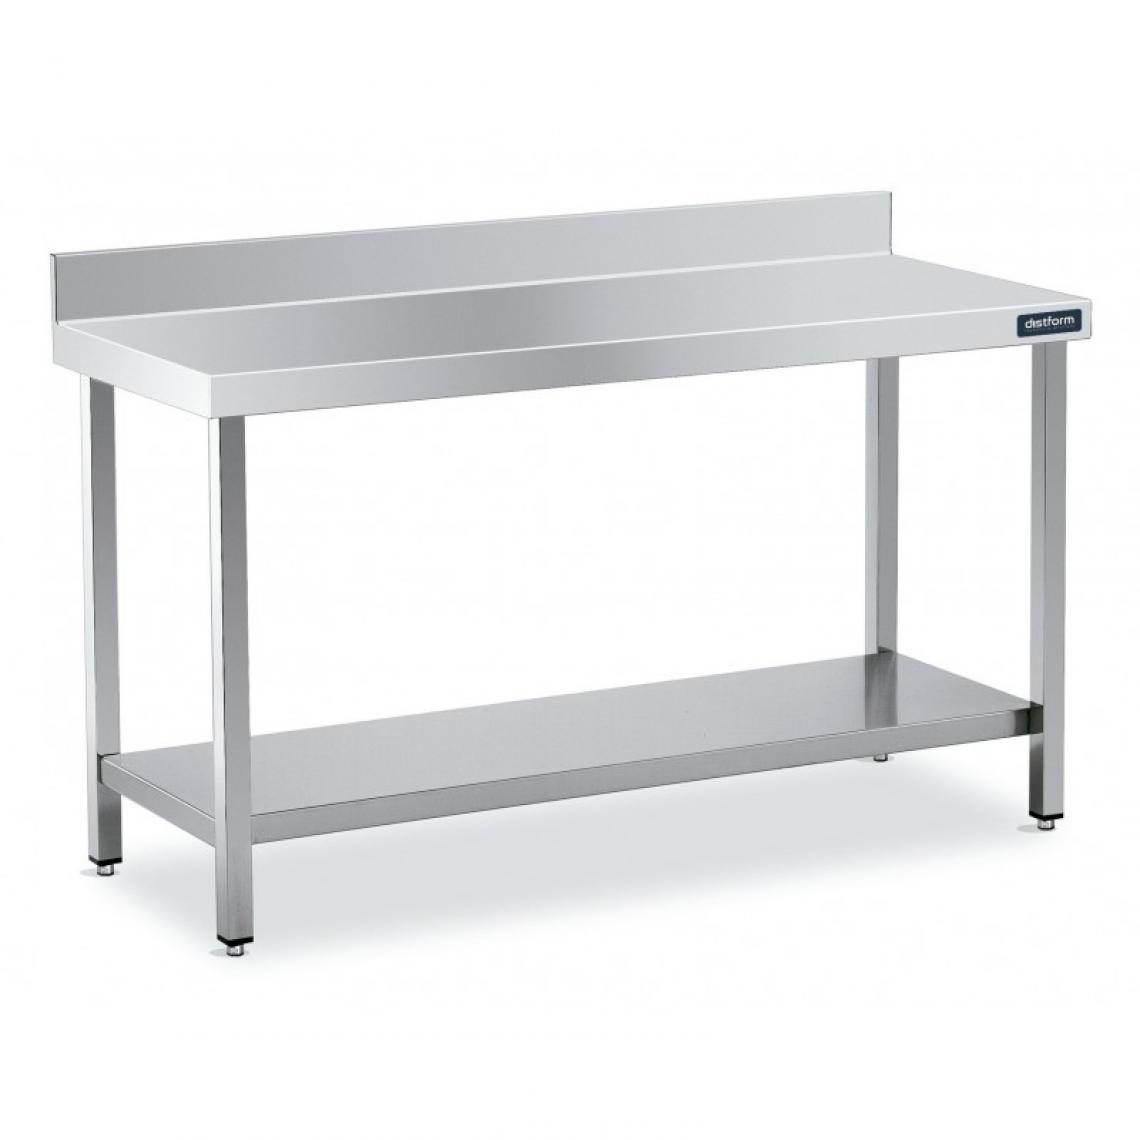 DISTFORM - Table Adossée en Inox avec 1 étagère Profondeur 550 mm - Distform - Acier inoxydable1600x550 - Tables à manger